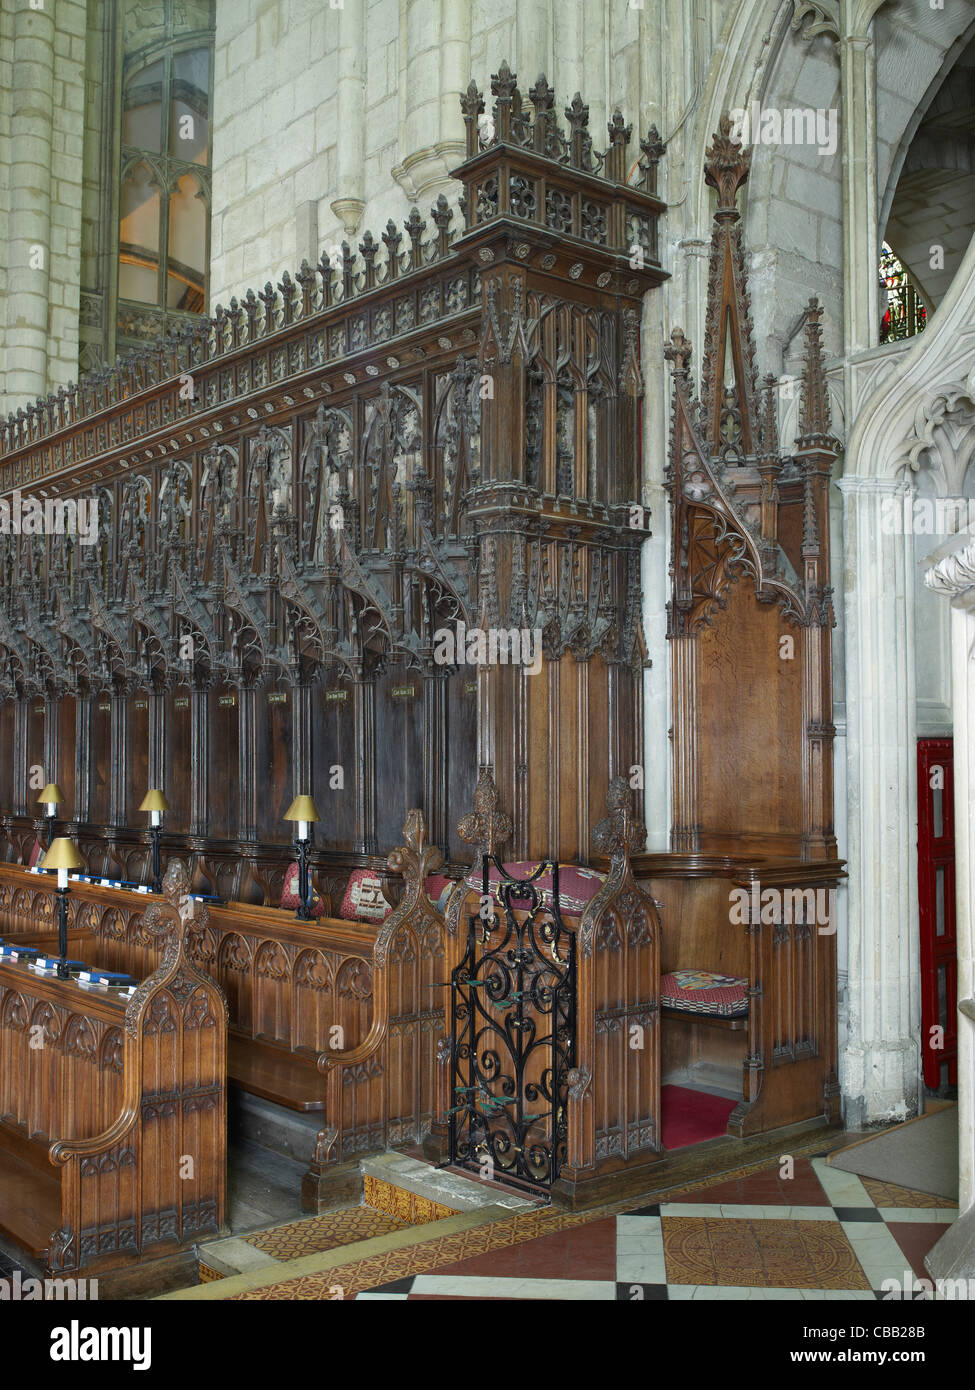 La cattedrale di Gloucester, sindaco del posto di guida Foto Stock